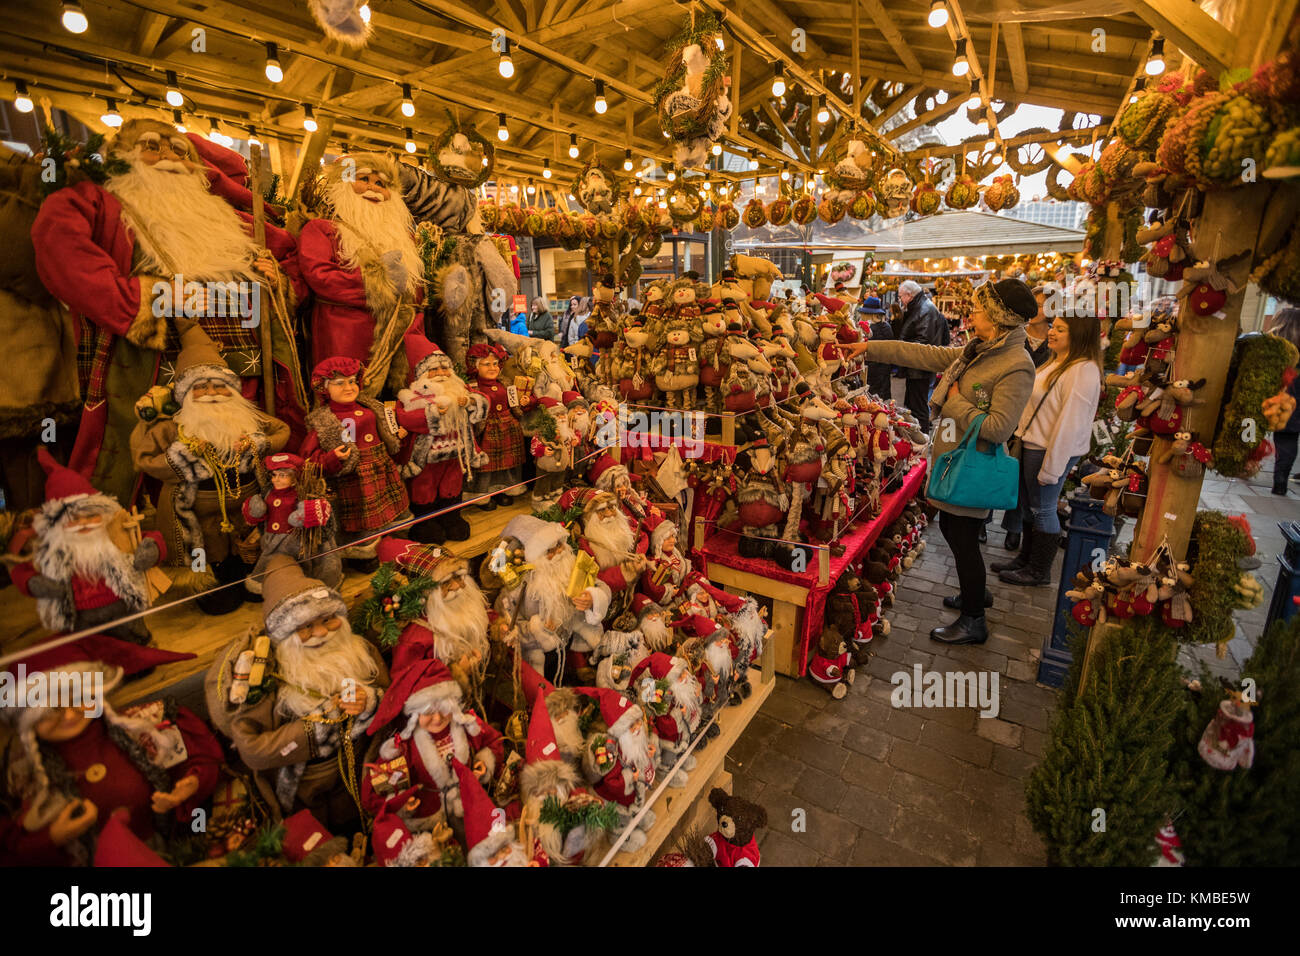 La gente de compras en puestos de mercado con productos navideños en Manchester los mercados de Navidad alrededor de la ciudad, Manchester, Inglaterra, Reino Unido. Foto de stock